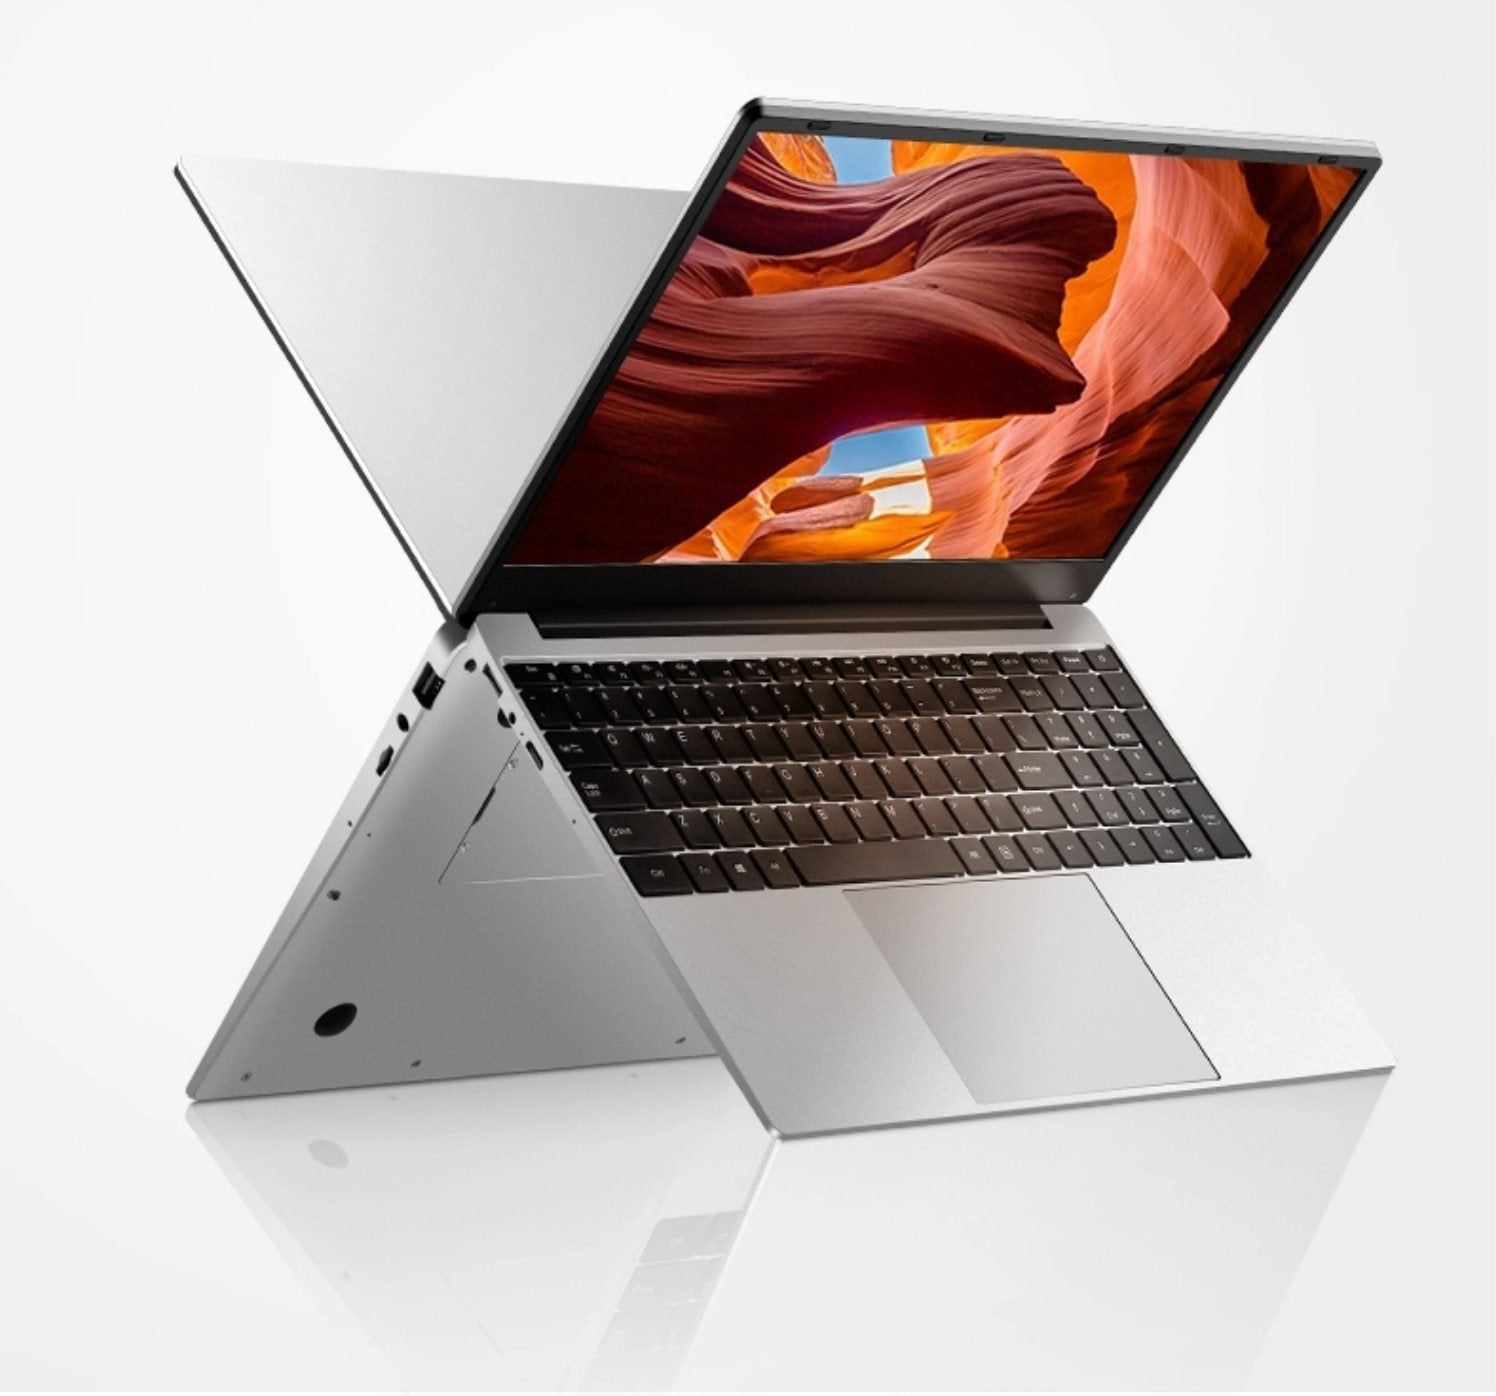 Notebook 13.3 Inch Air Laptop 8G ram 256G ssd Quad-Core Intel i5 7Y54 GreatEagleInc